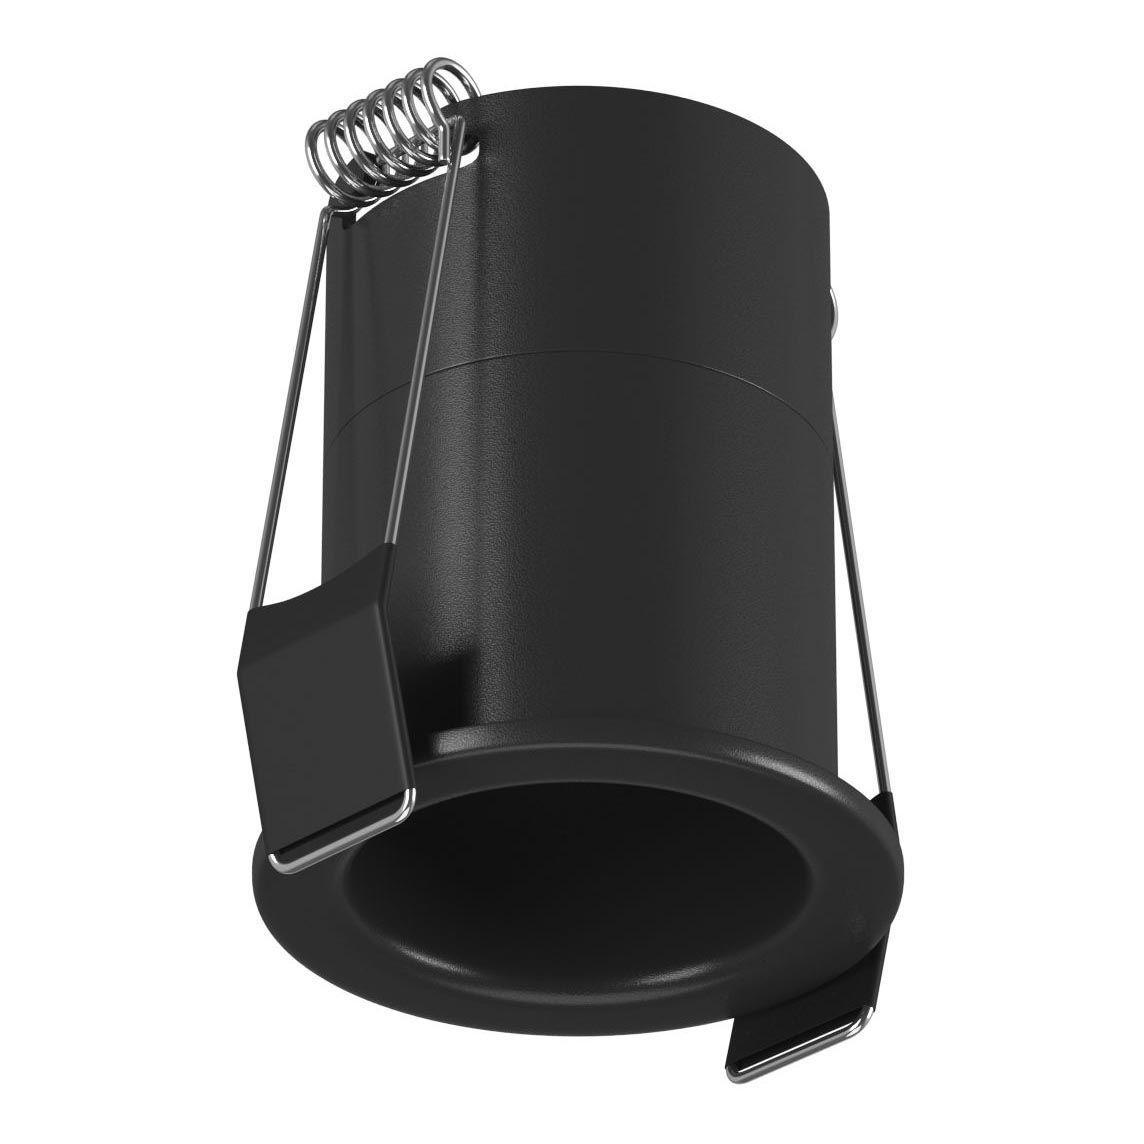 Встраиваемый светодиодный светильник DesignLed DL-A004-7-BL-WW 006639 рюкзак xd design bobby soft чёрный p705 791